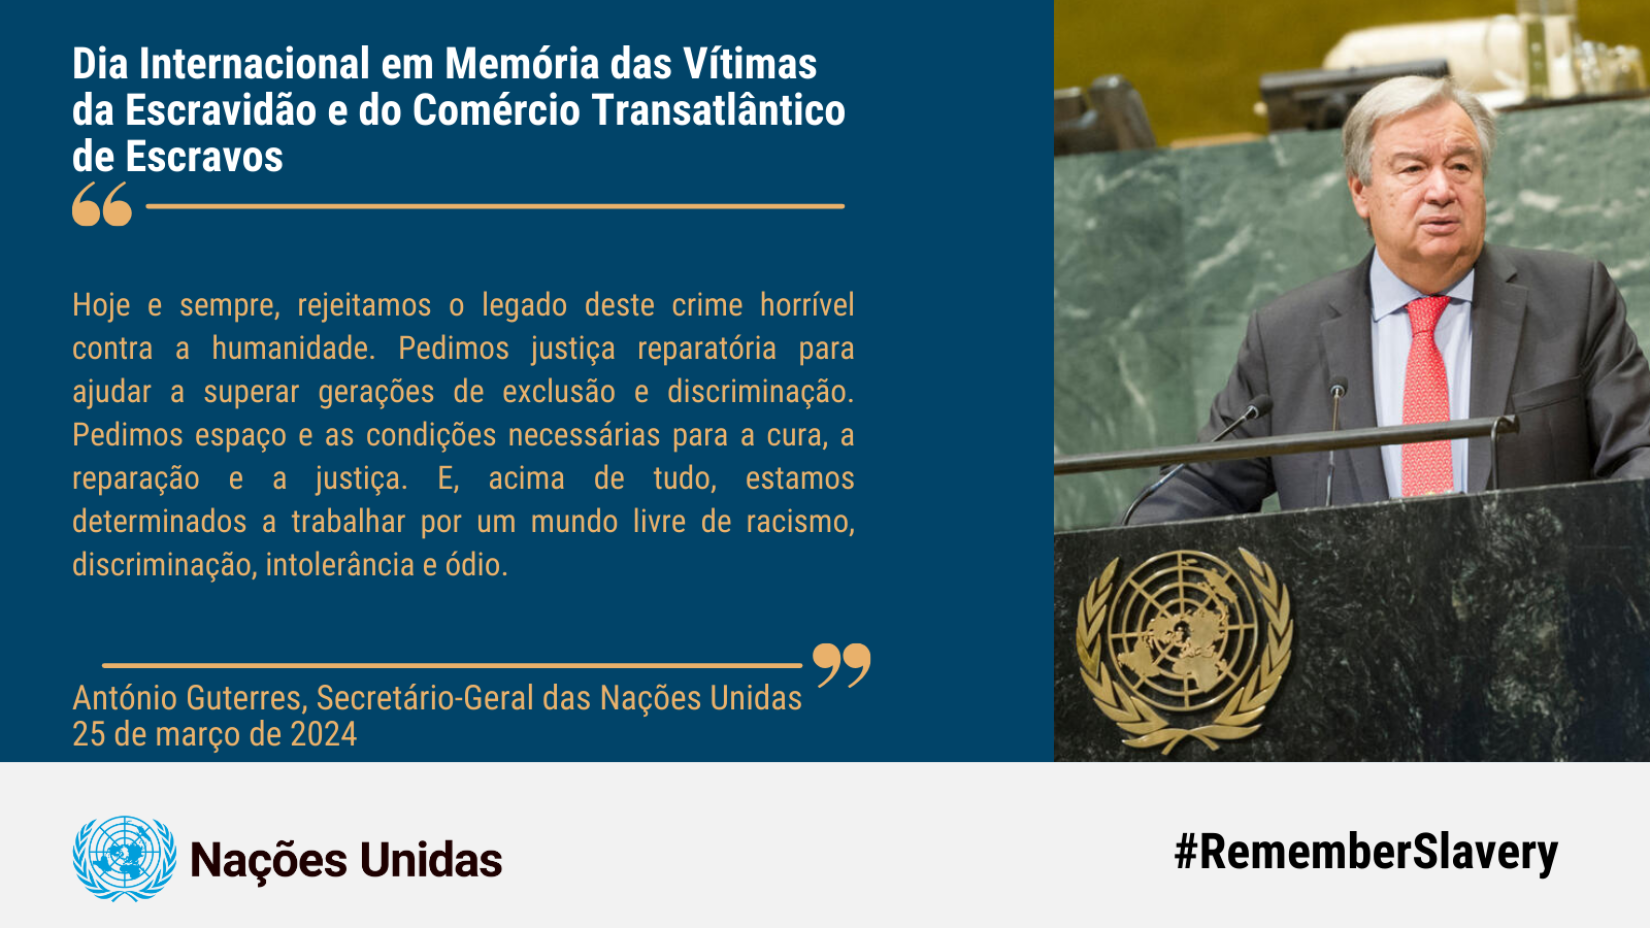 Mensagem do secretário-geral da ONU, António Guterres, para o Dia Internacional em Memória das Vítimas da Escravidão e do Tráfico Transatlântico de Escravos. 